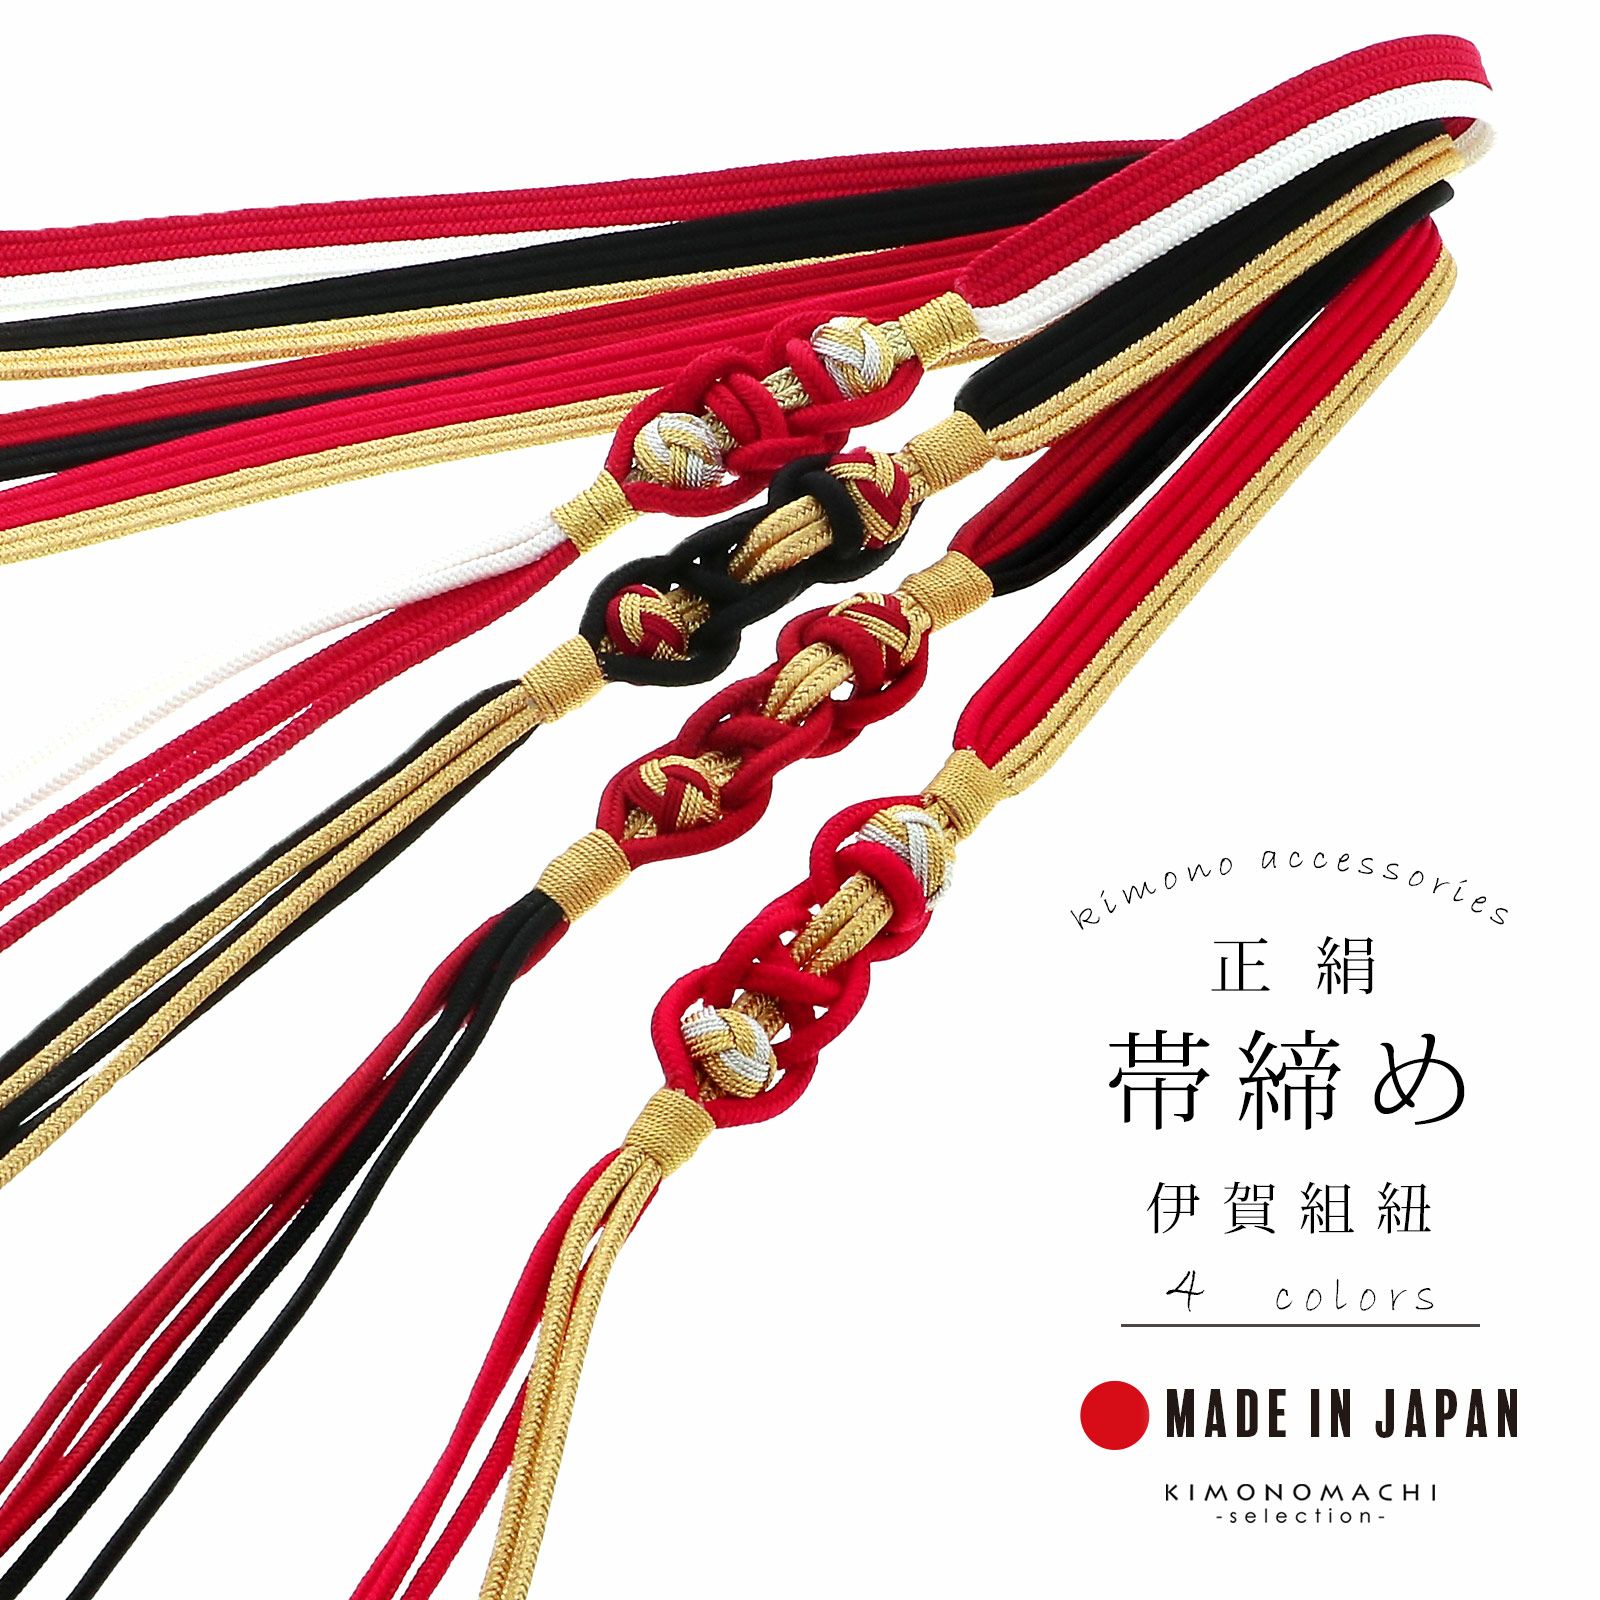 帯締め 伊賀組紐 振袖用 正絹 「赤×金・黒×金・赤×黒・赤×白」 日本製